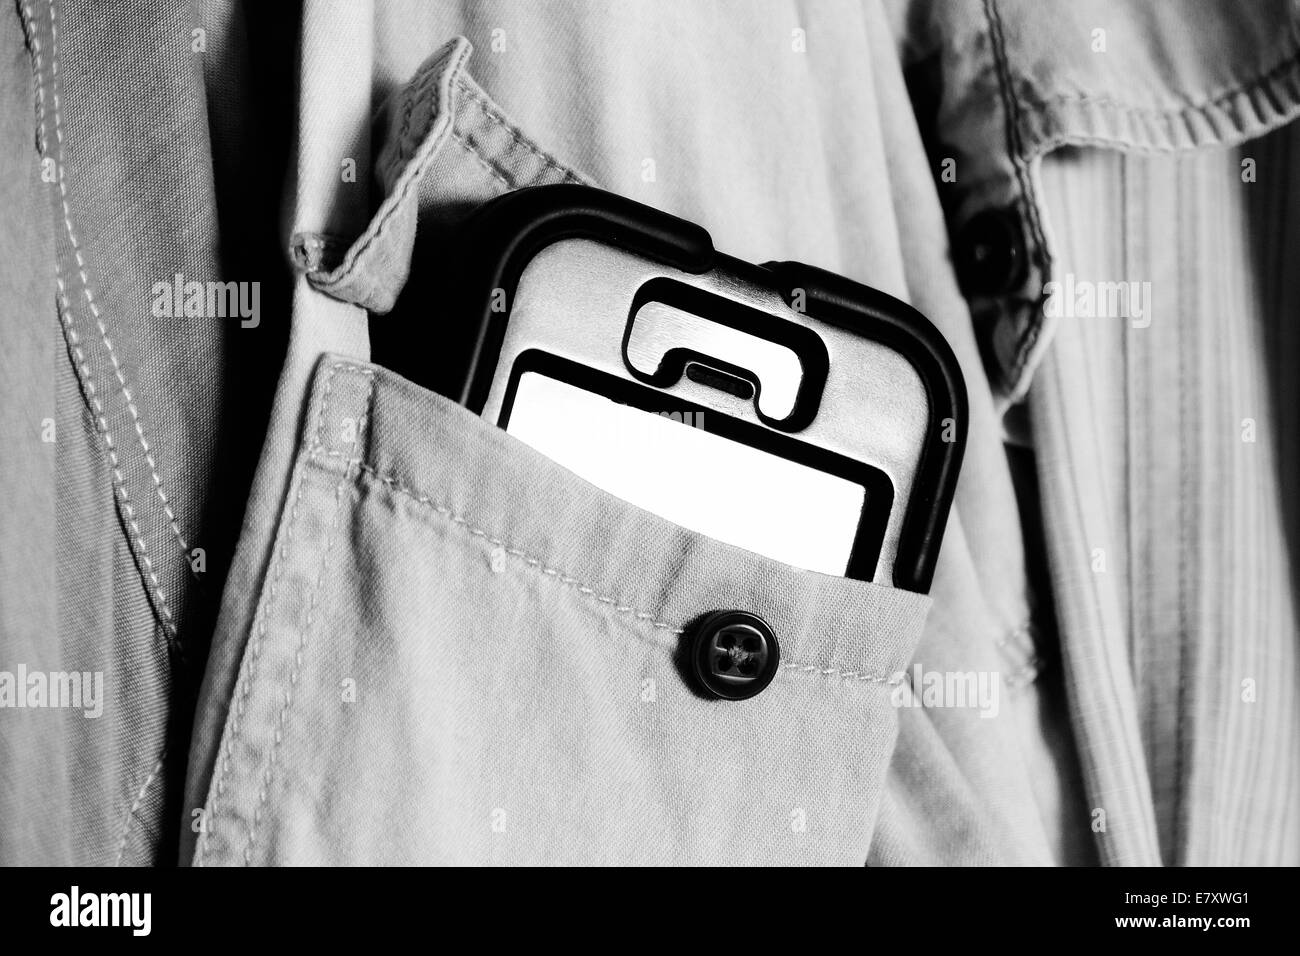 Un iphone téléphone cellulaire dans un boîtier de protection qui sort d'une poche avant shirt pendu Banque D'Images